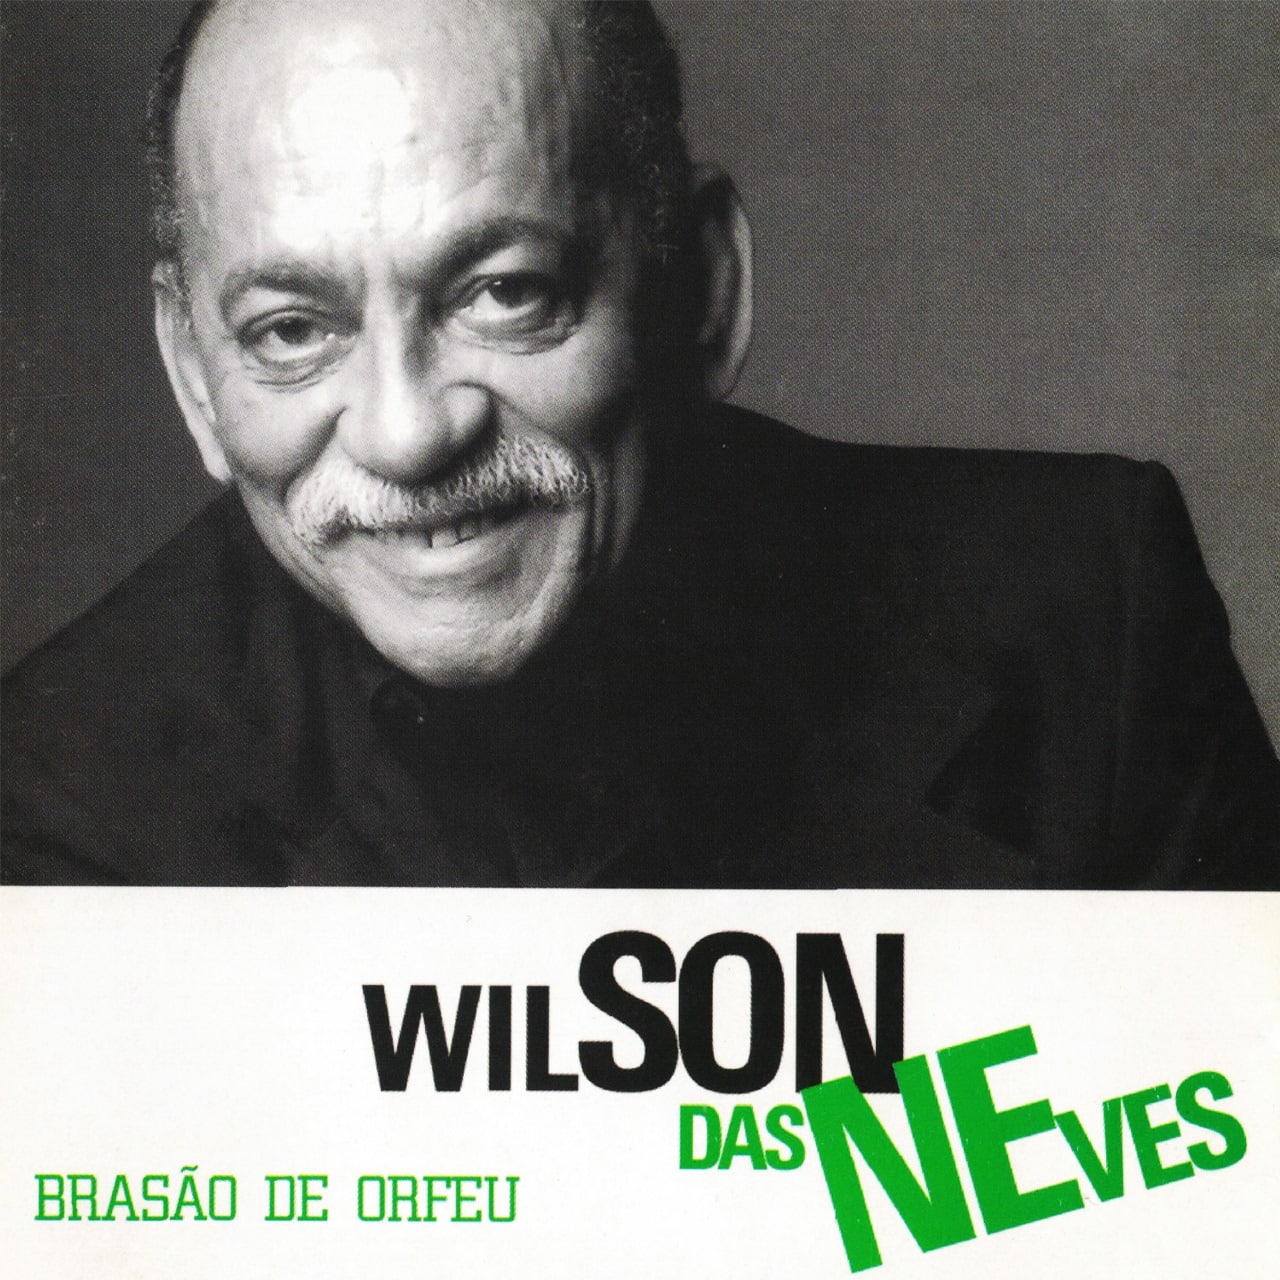 revistaprosaversoearte.com - 'Brasão Orfeu', álbum de Wilson das Neves chega à plataformas, 10 anos depois de lançado